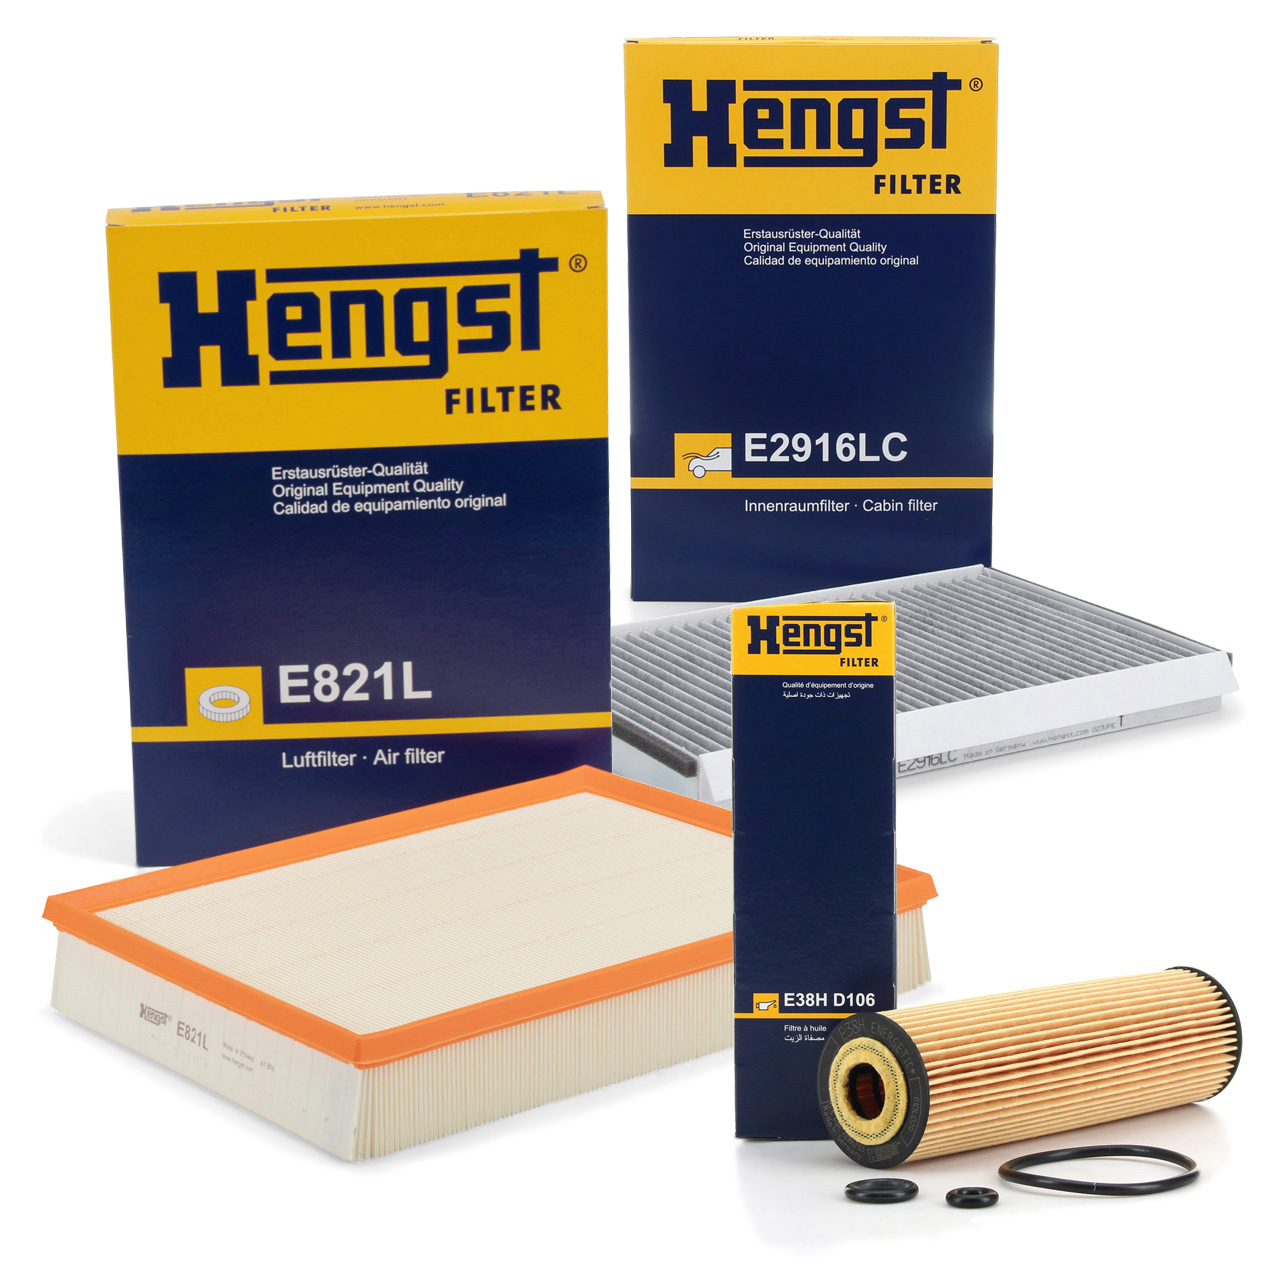 HENGST Filterset MERCEDES-BENZ Sprinter 906 216 316 516 / LGT / NGT M271